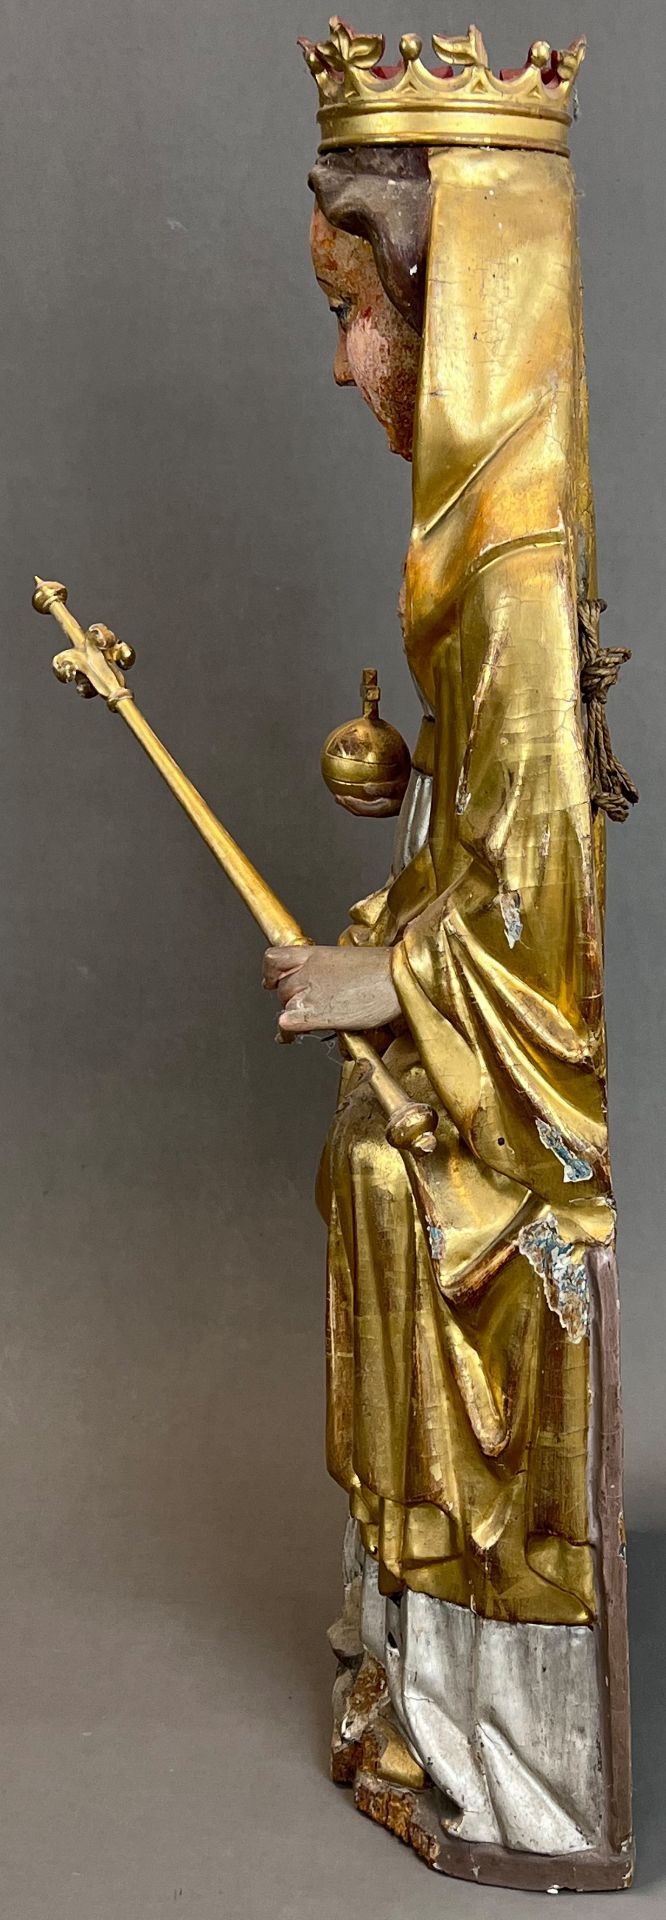 Holzfigur. Jungfrau Maria mit Christuskind. Um 1700. Süddeutschland. - Bild 2 aus 10